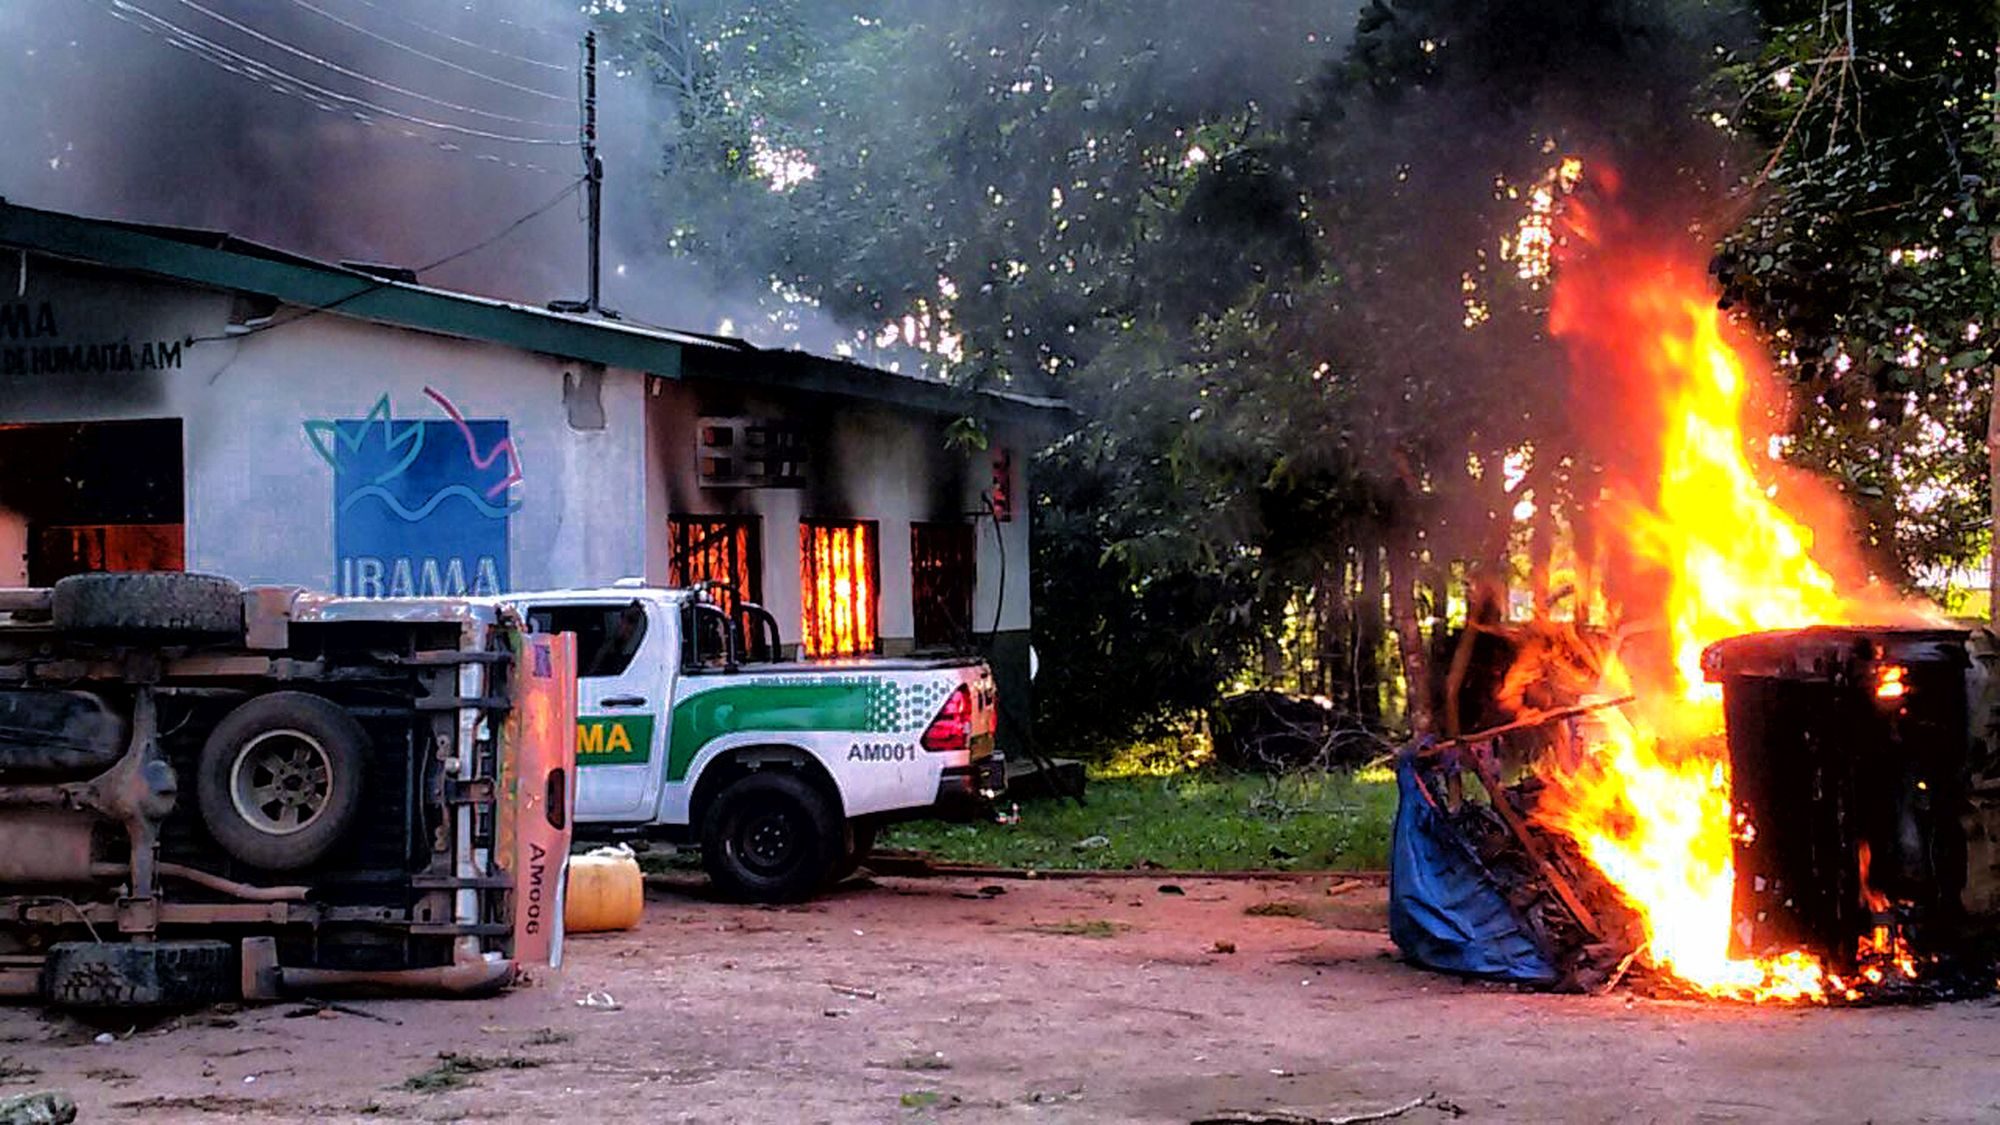 Armed men set fire to environmental agency buildings in Brazil's Amazon region